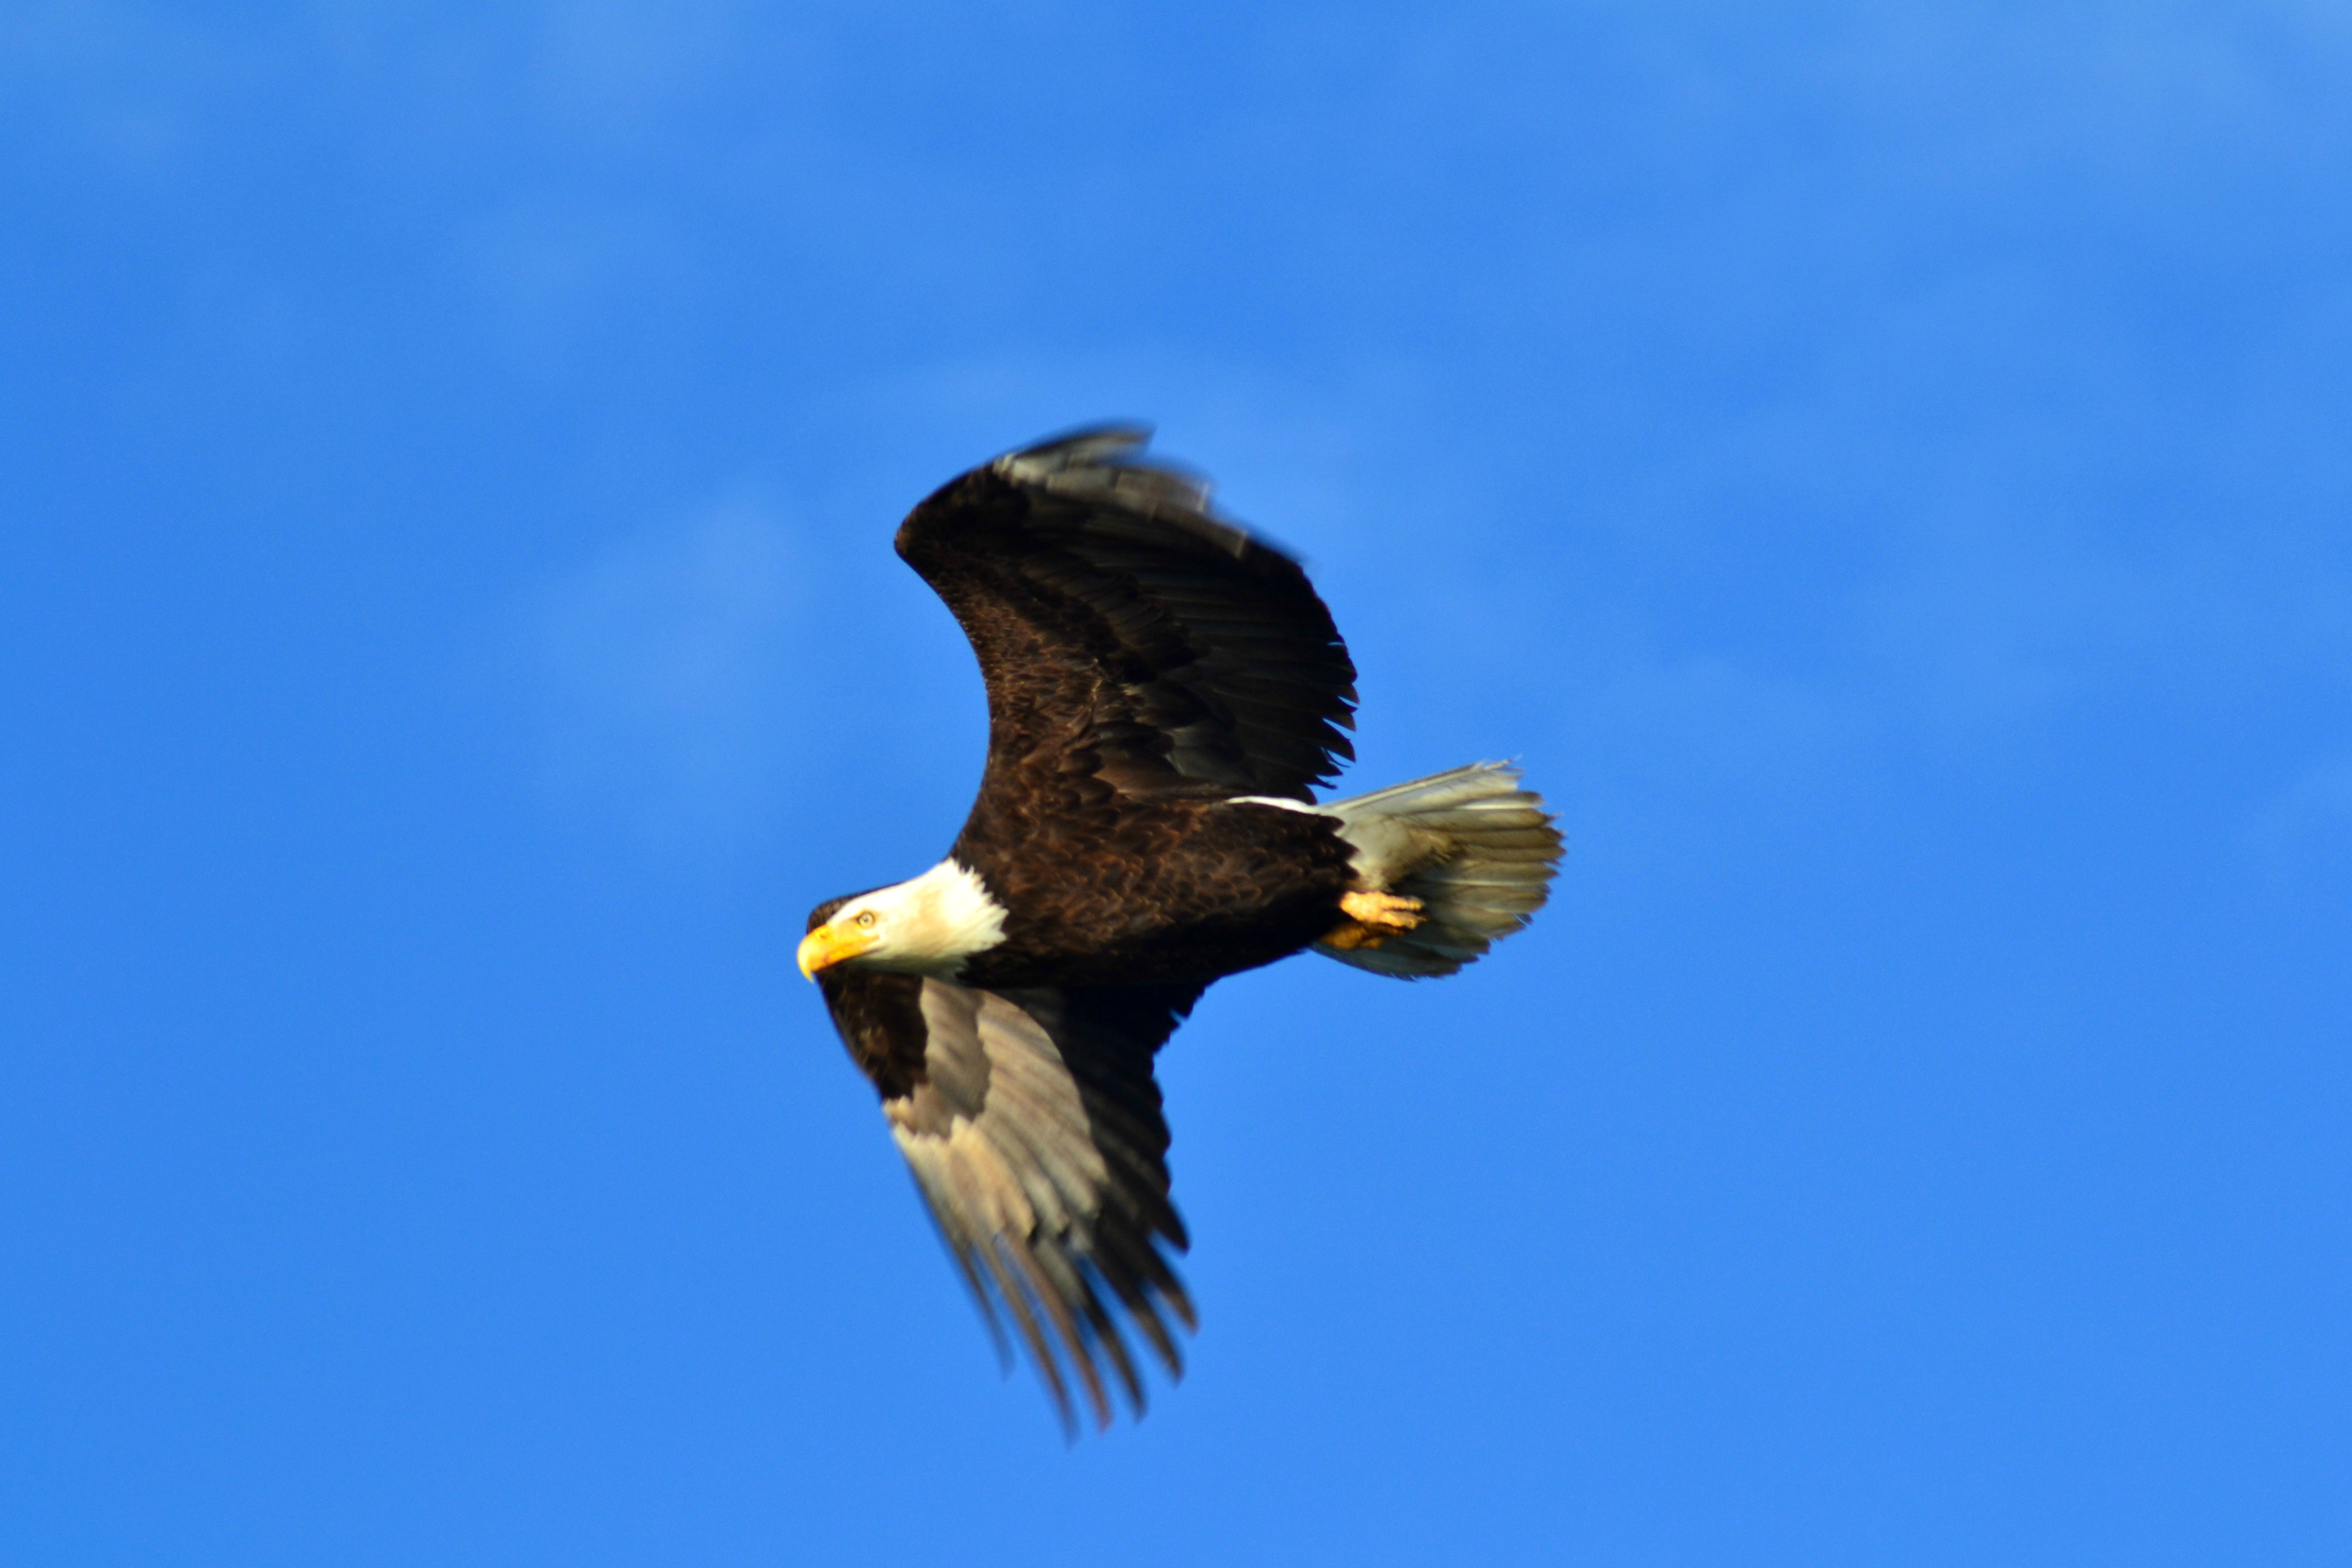 Junipers Reservoir RV Resort - bald eagle